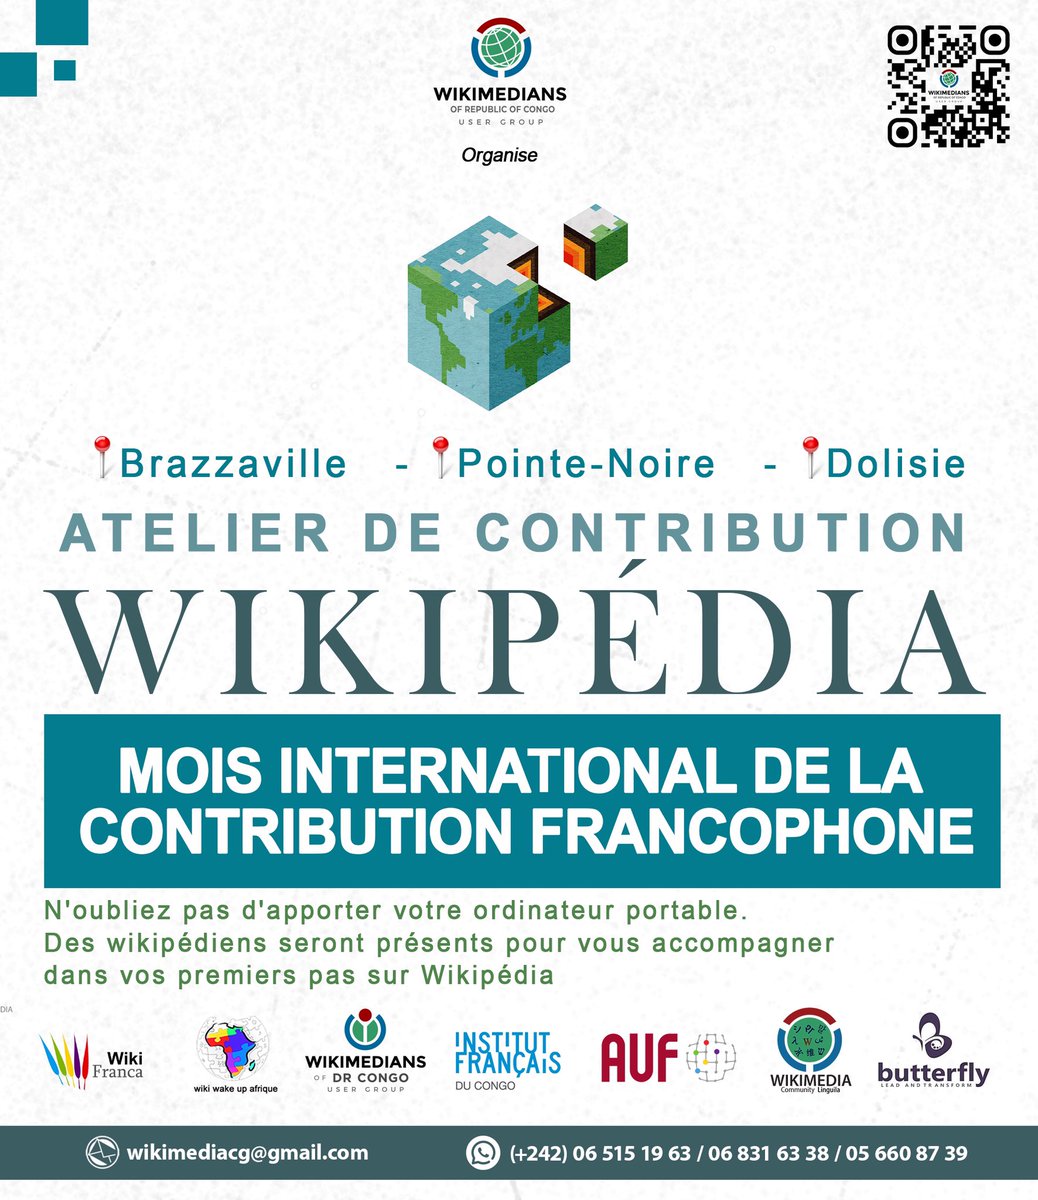 ✨ NOTRE RDV DU MOIS DE MARS #Mars | À l'occasion du Mois International de la contribution francophone, nous vous offrons l'opportunité de vous joindre 𝐆𝐑𝐀𝐓𝐔𝐈𝐓𝐄𝐌𝐄𝐍𝐓 à nos ateliers de formation sur la contribution à Wikipédia. 📚💻 #Wikifranca #AteliersFormation